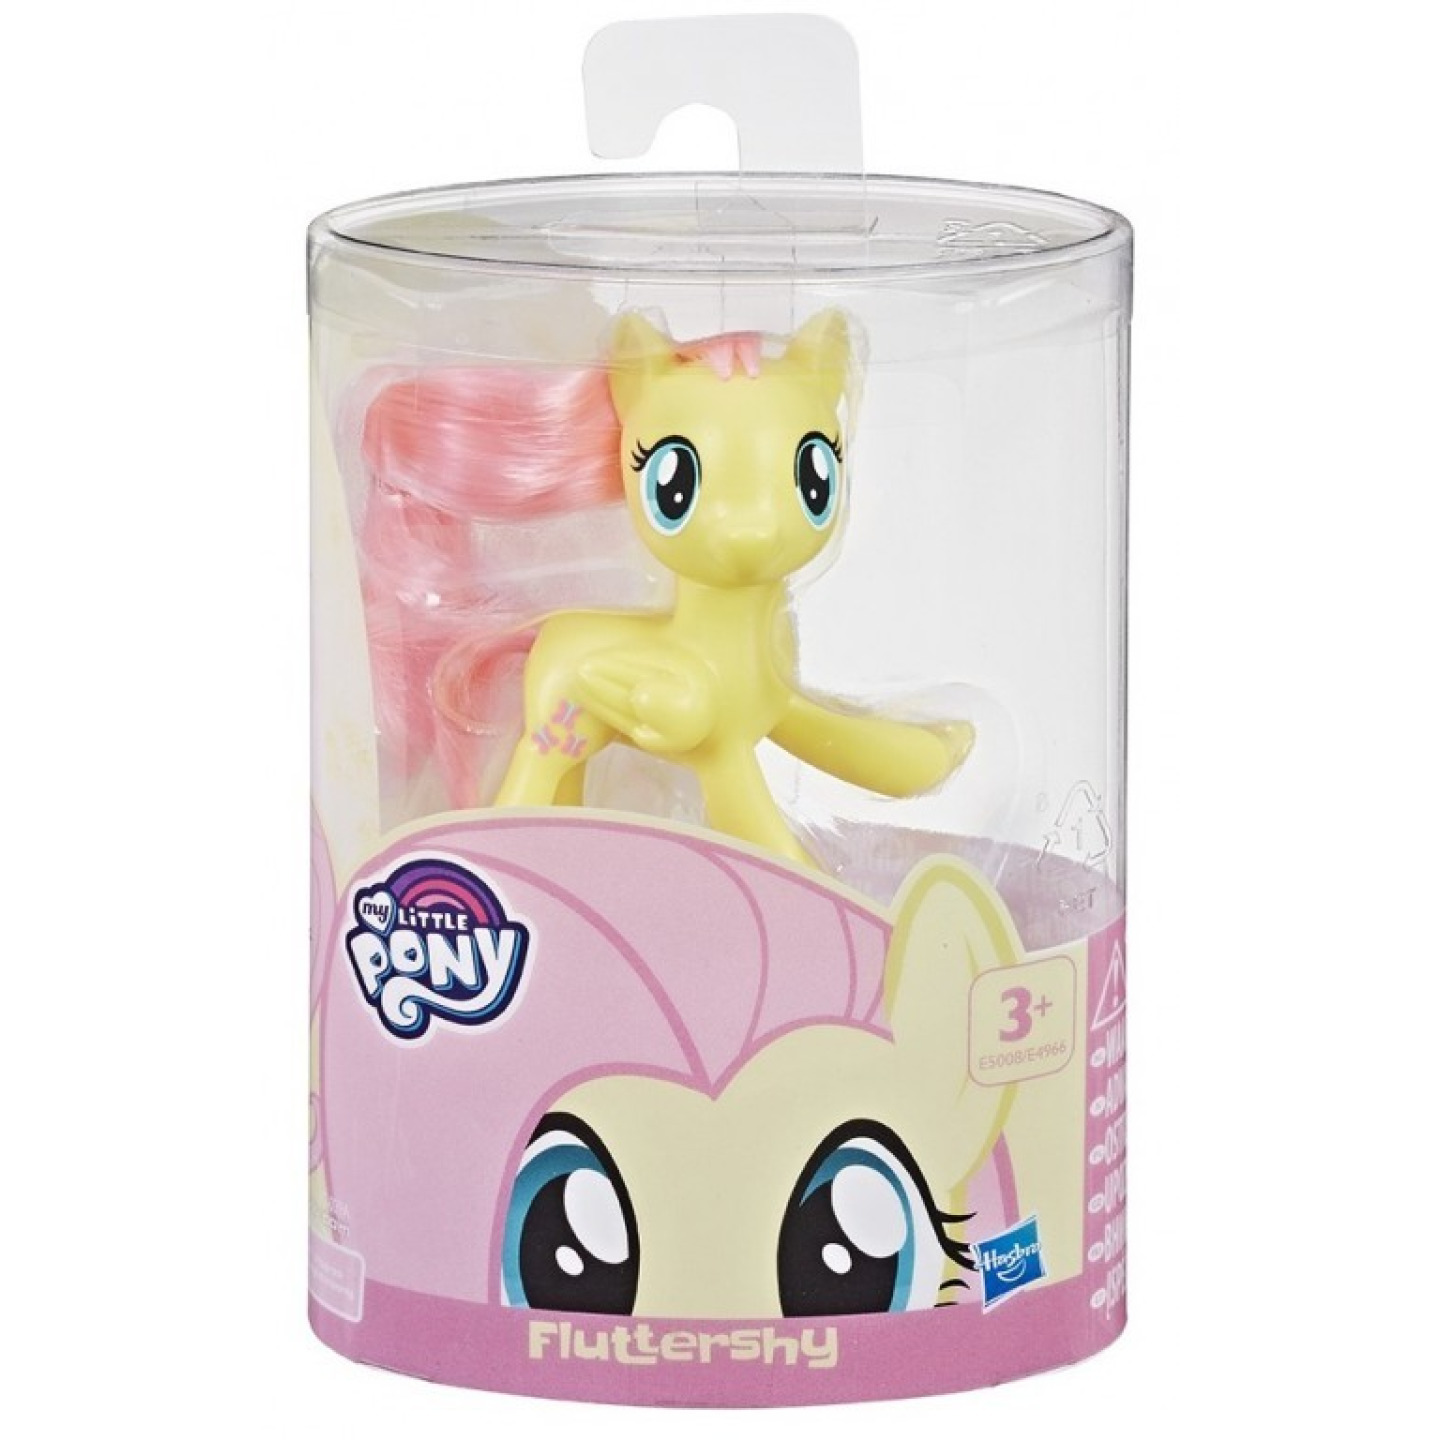 My Little Pony Poníkova hříva Fluttershy, Hasbro E5008